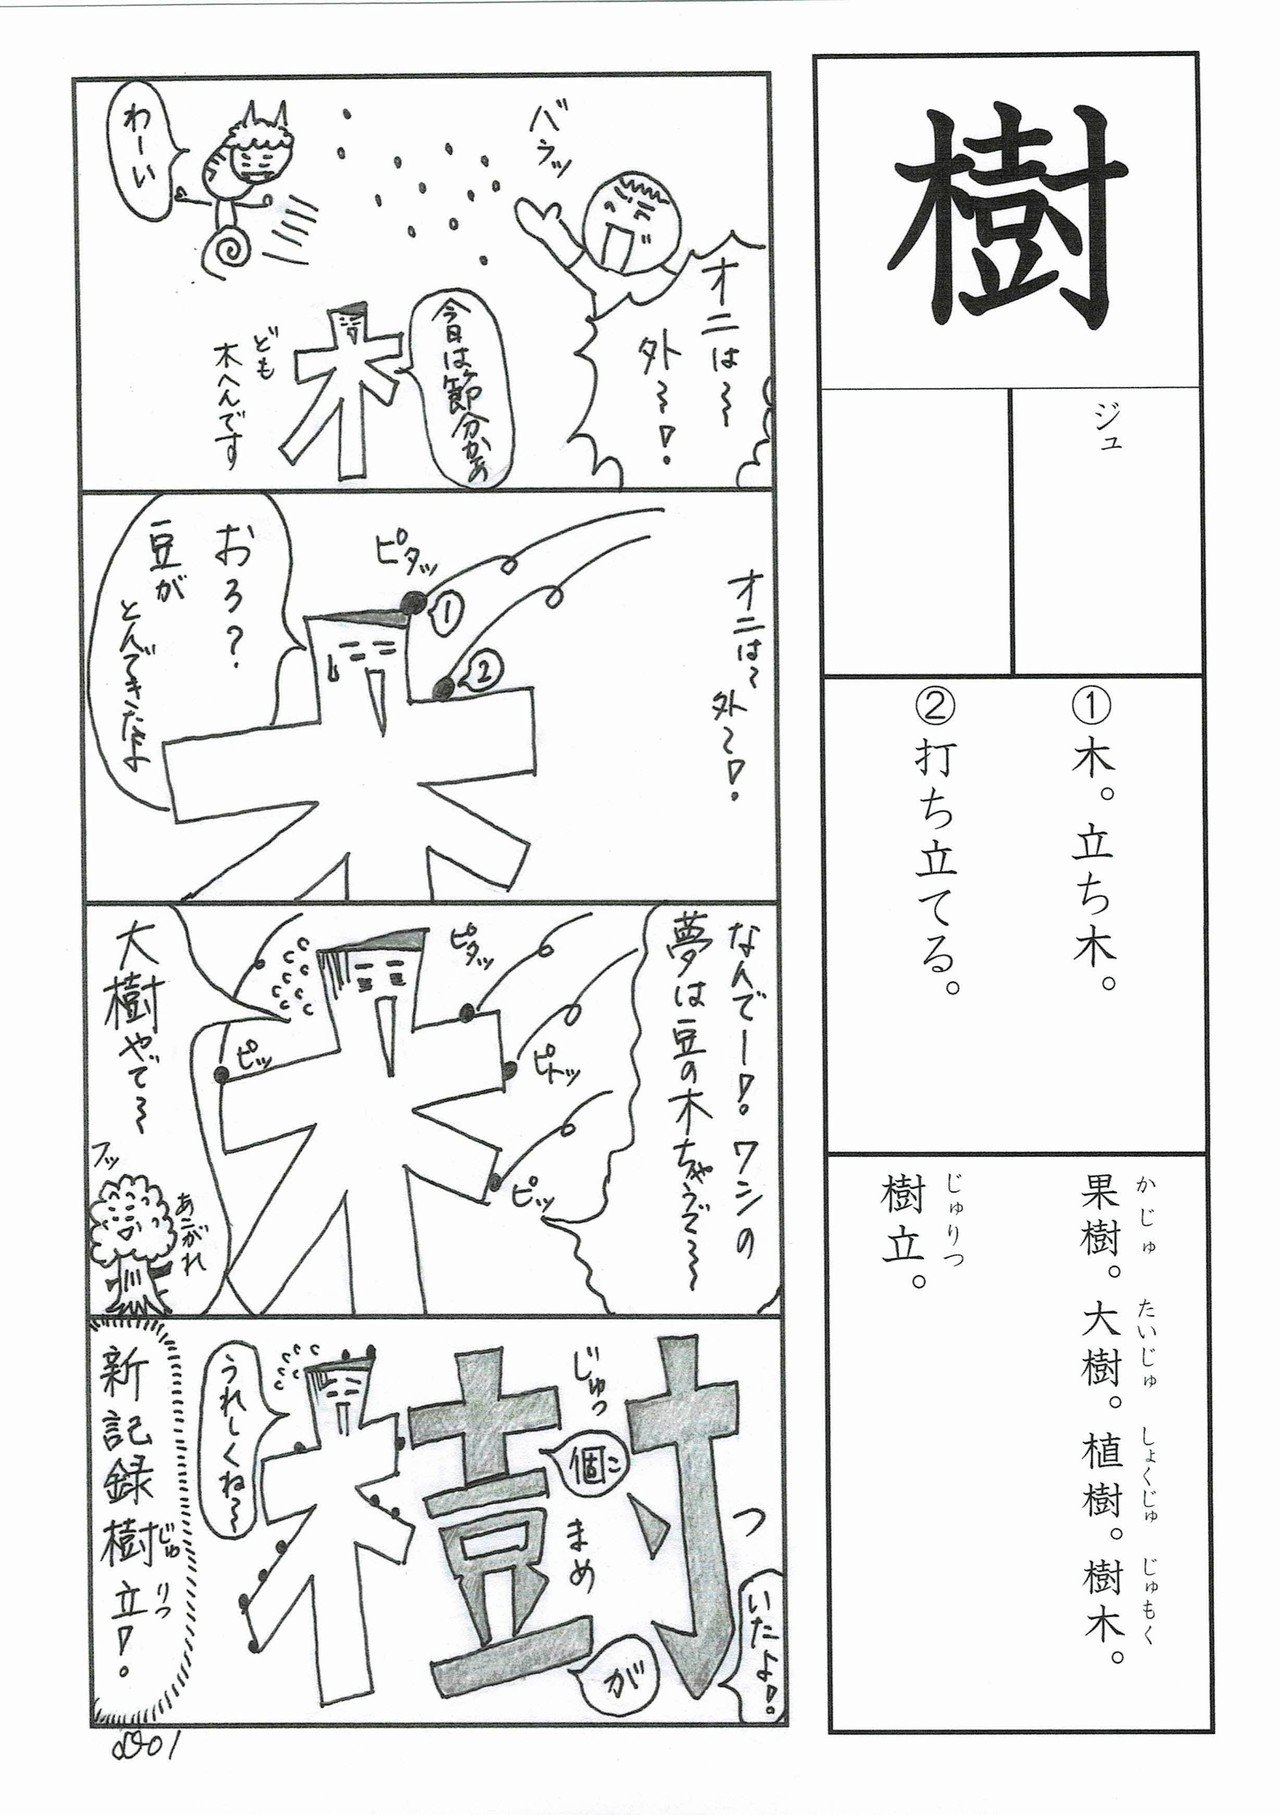 漢字四コマ漫画 小学校６年生 樹 の巻 Sun Sunny D01 Note